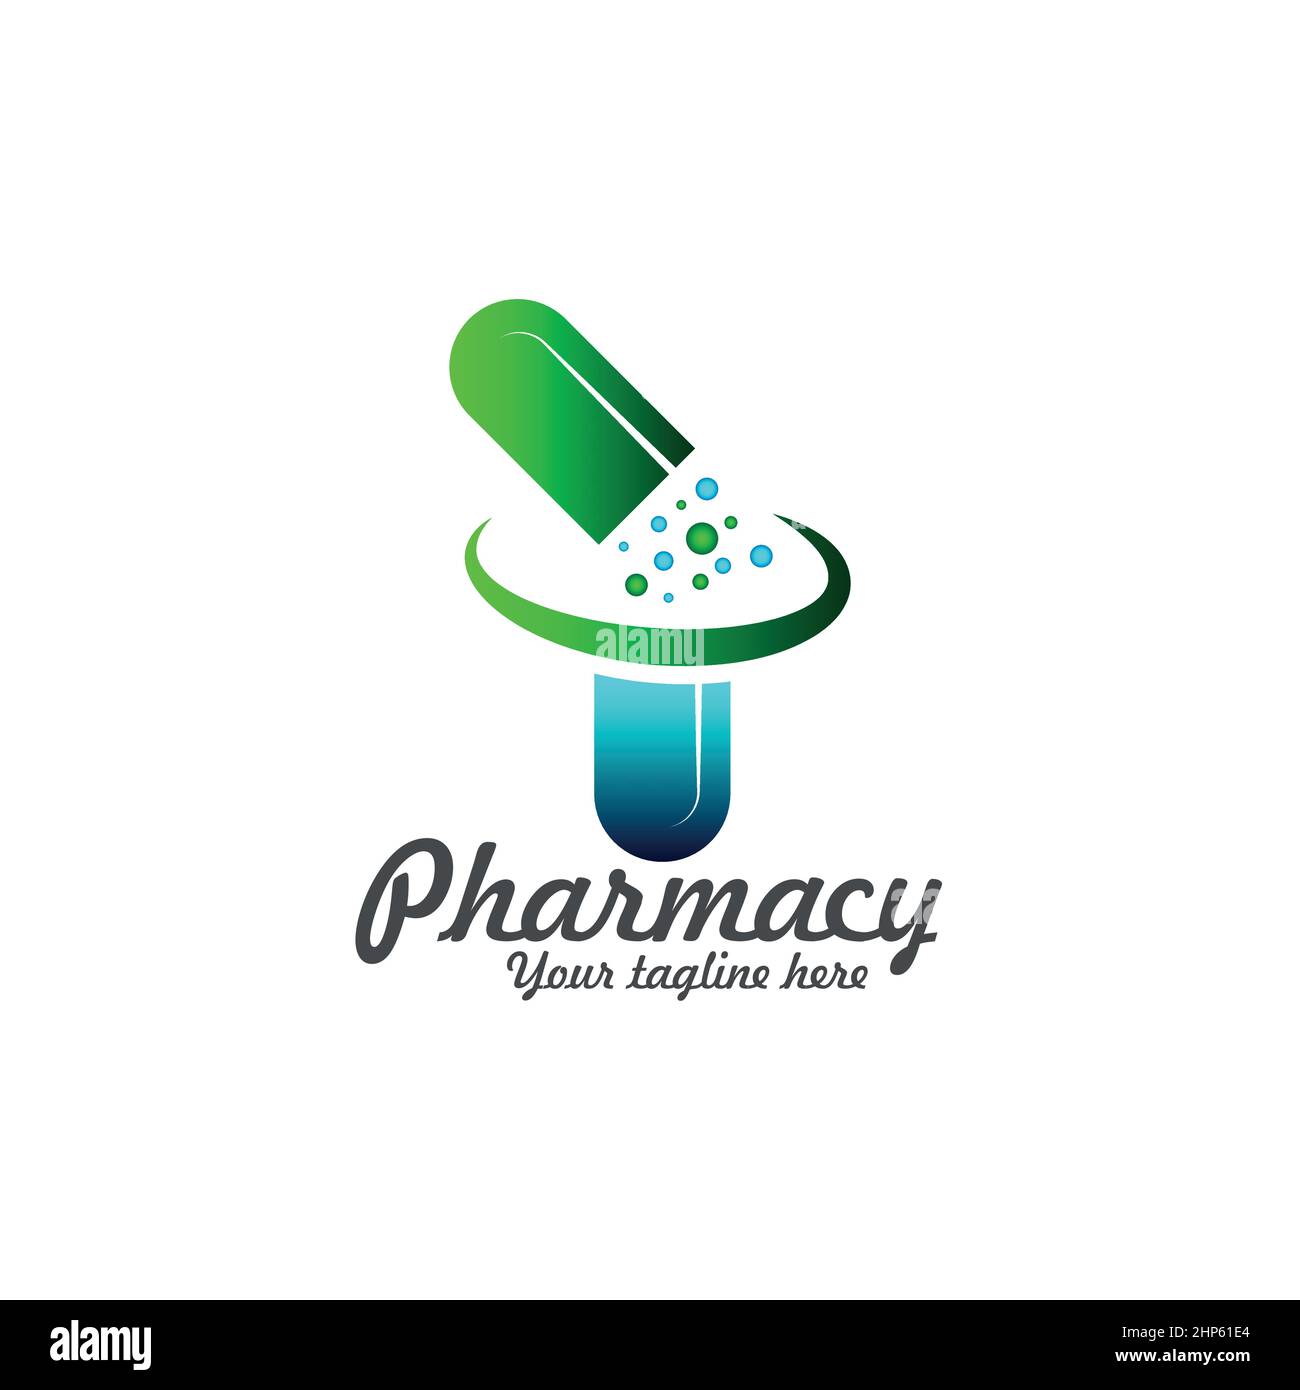 Pharmacy Logo Health Medical Logo Template Creative Vector Design Stock ...